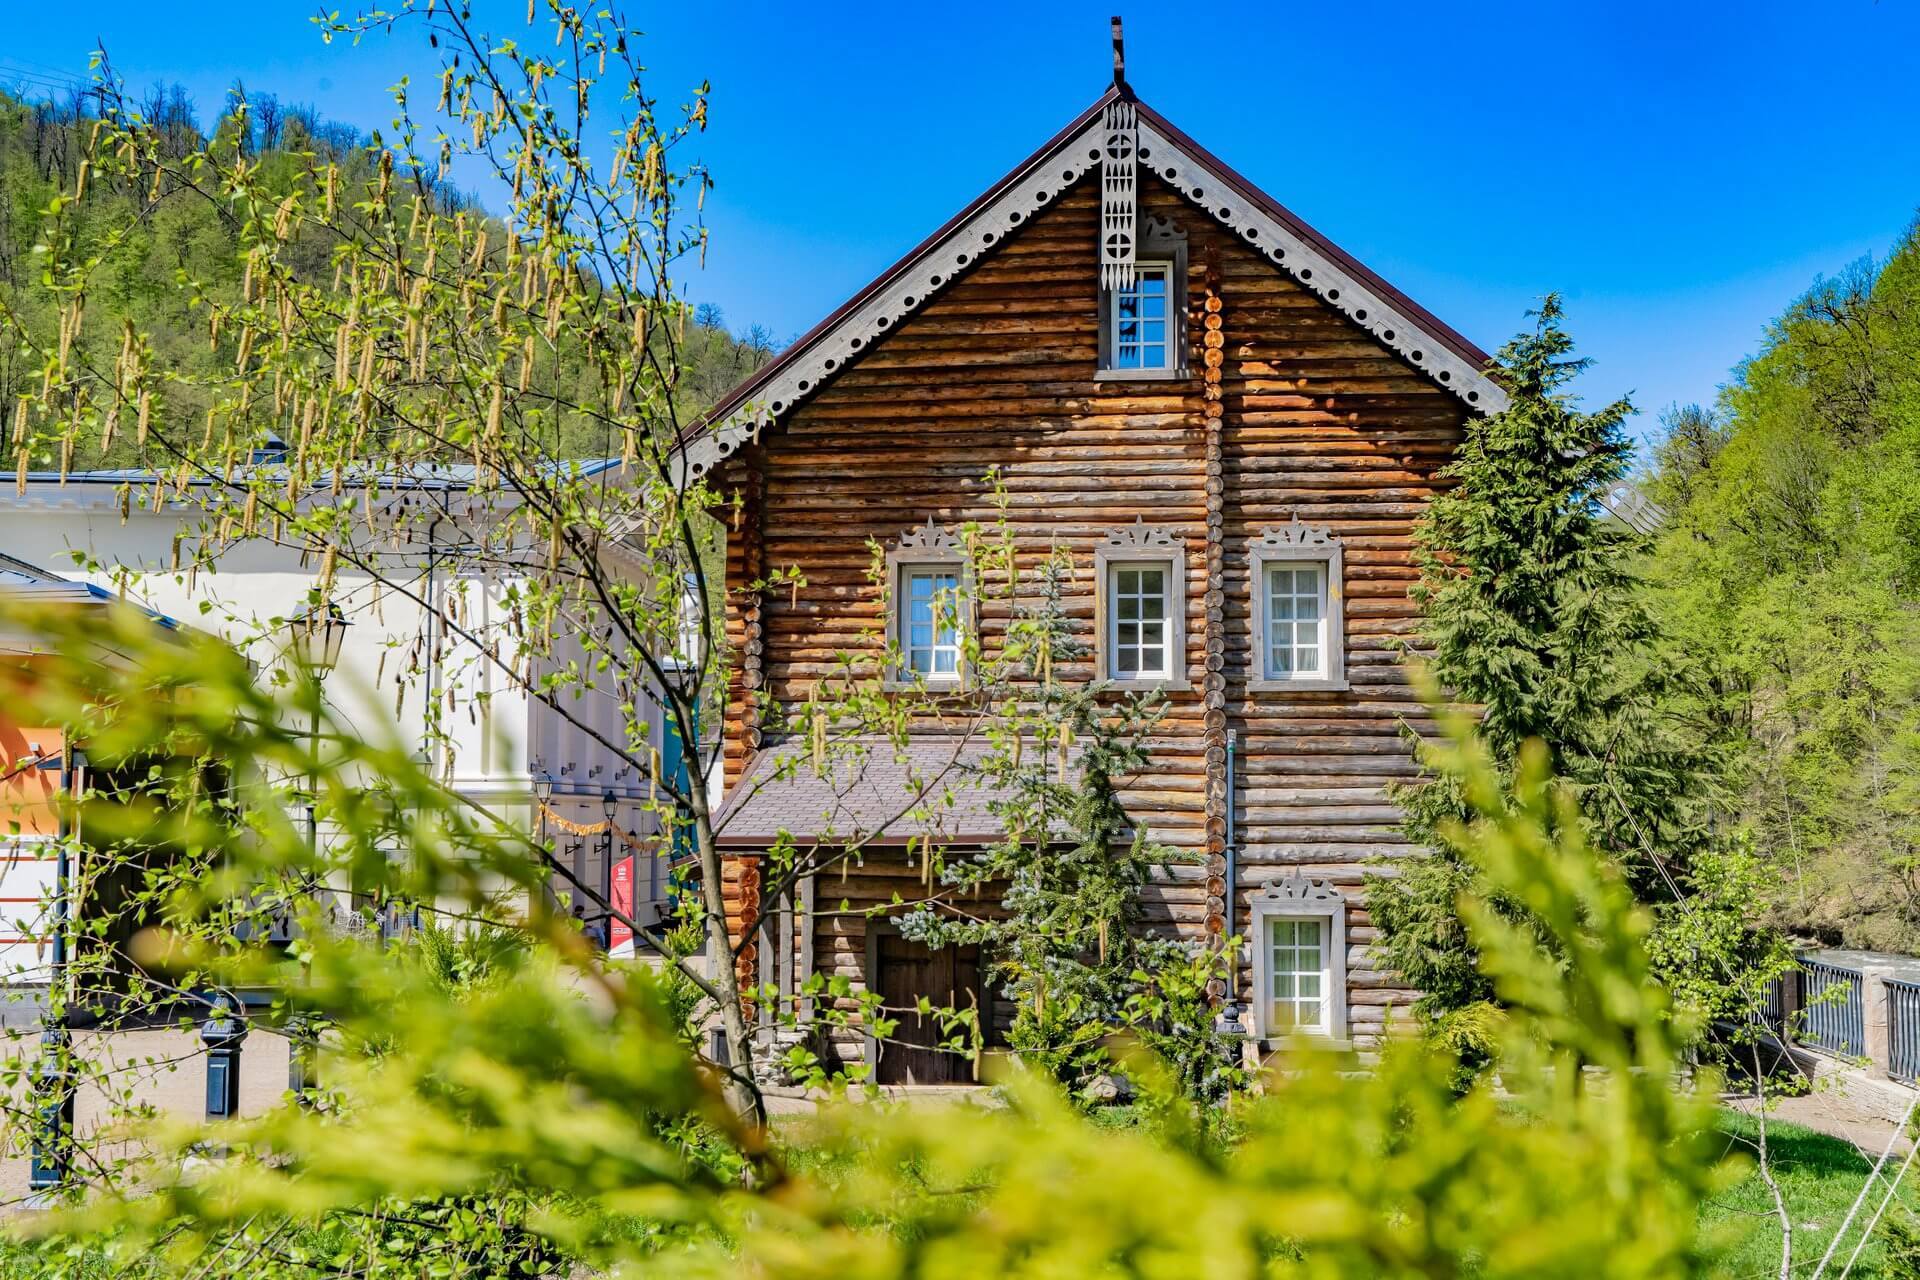 Дом построен в стиле "русского деревянного зодчества".